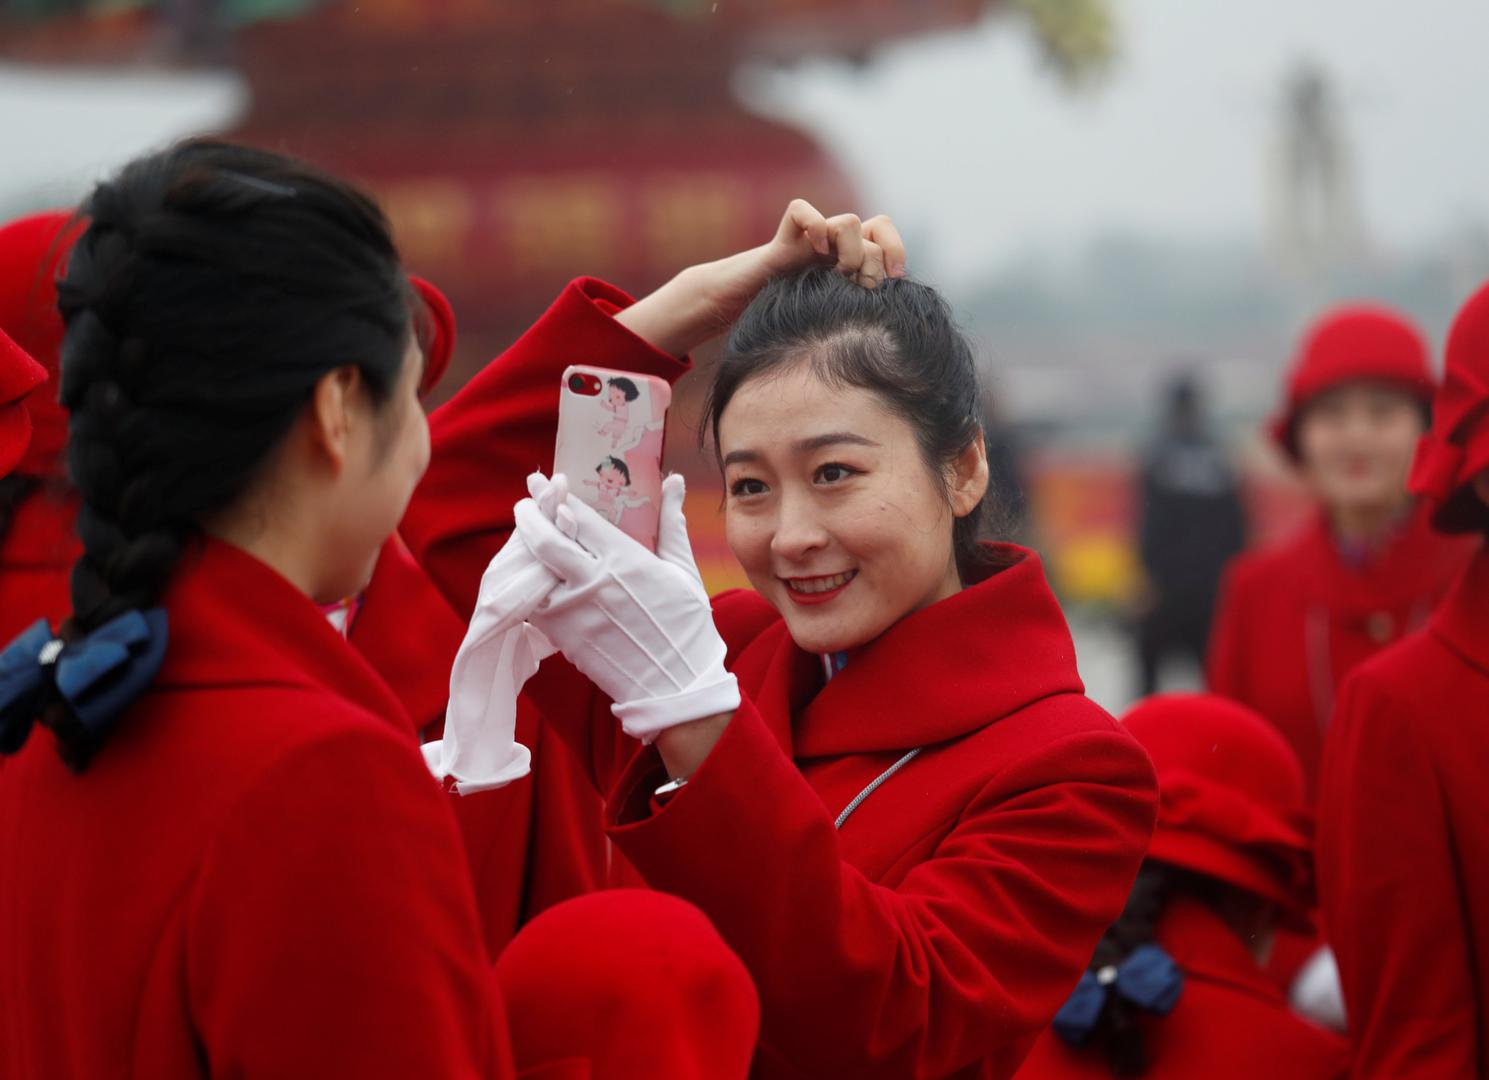 Kinezi s velikim očekivanjima prate odluke koje će im oblikovati život u sljedećih pet godina